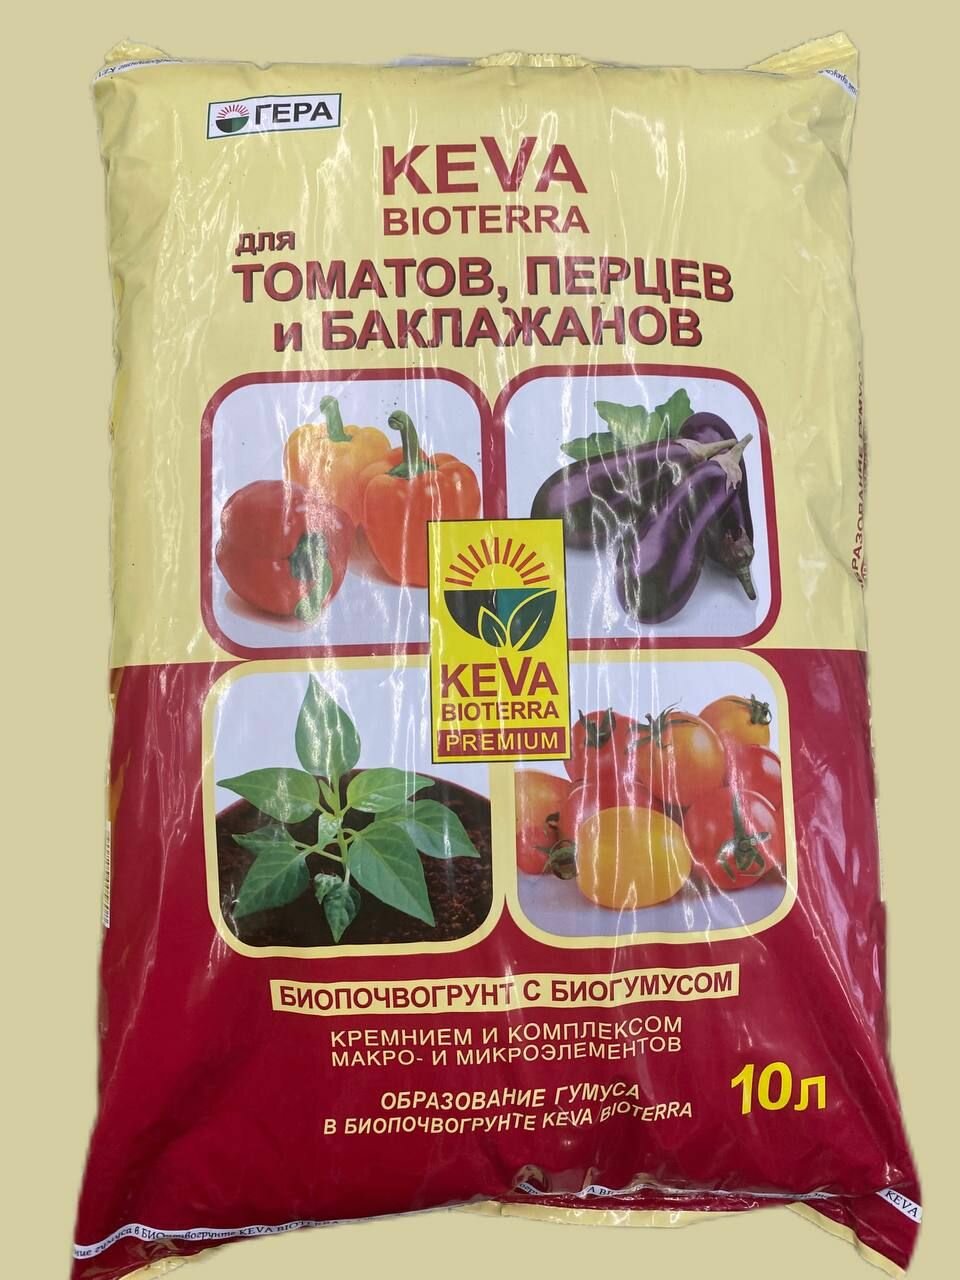 Биопочвогрунт для томатов перцев и баклажанов с биогумусом